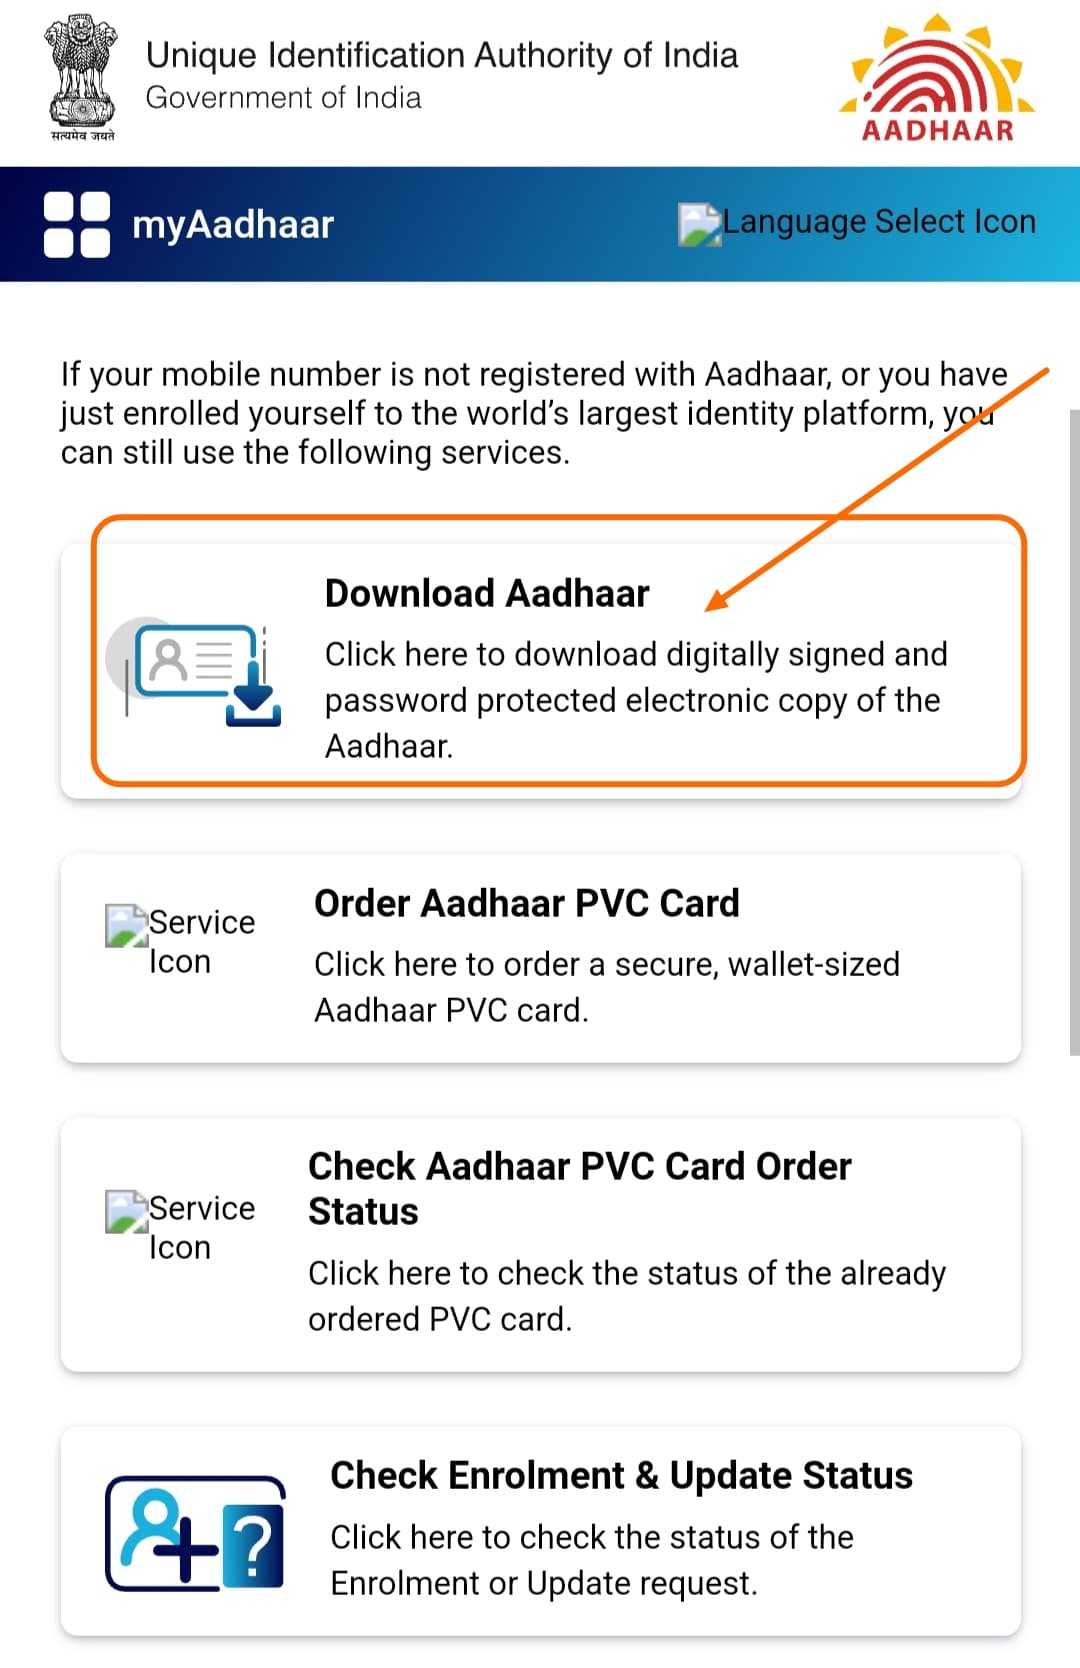 Download Adhar card